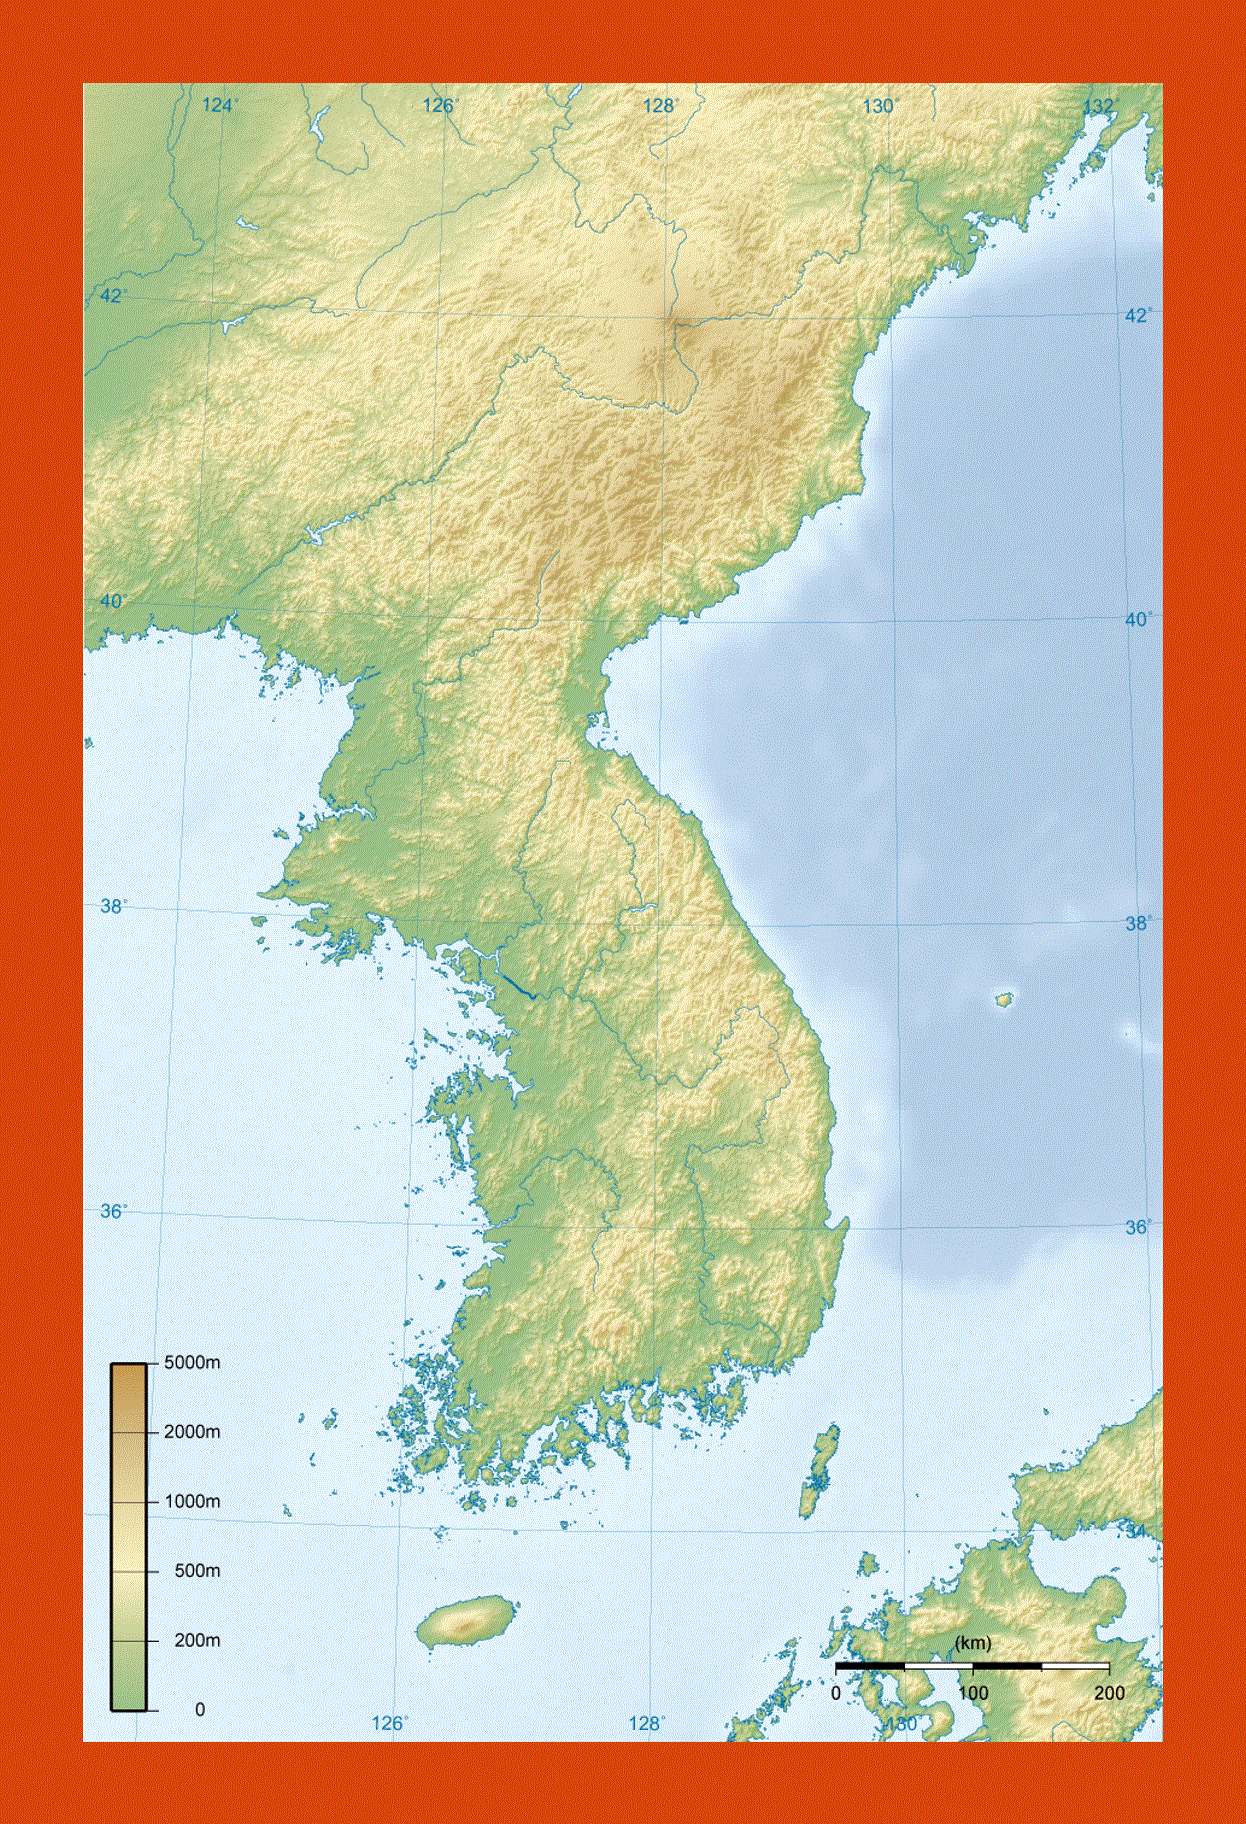 Topographic map of Korean Peninsula